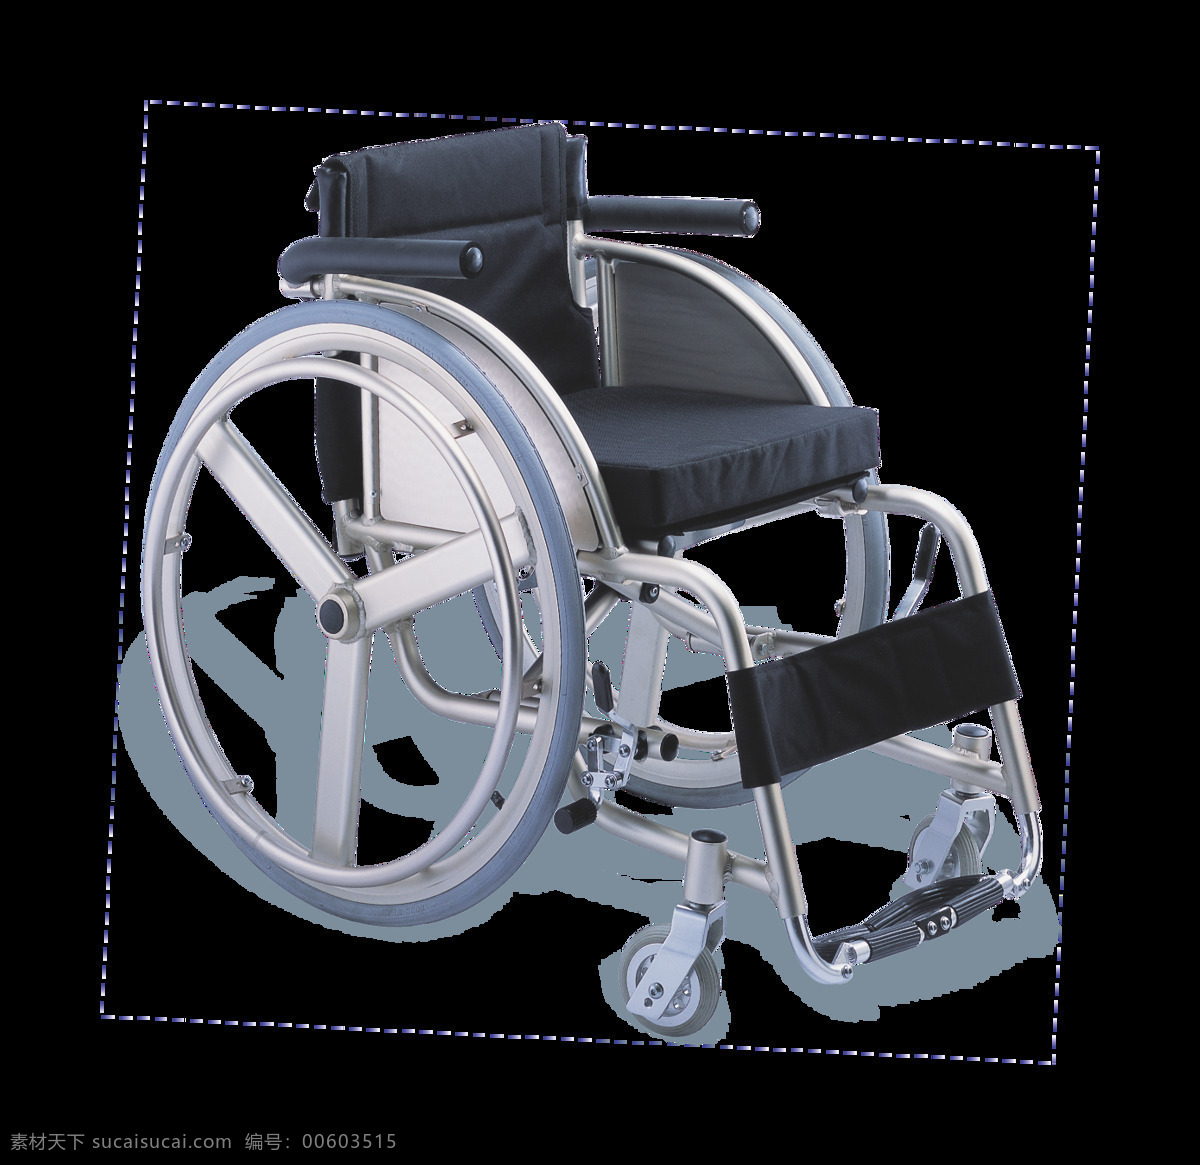 老年 轮椅 图 免 抠 透明 层 木轮椅 越野轮椅 小轮轮椅 手摇轮椅 轮椅轮子 车载轮椅 老年轮椅 竞速轮椅 轮椅设计 残疾轮椅 折叠轮椅 智能轮椅 医院轮椅 轮椅图片